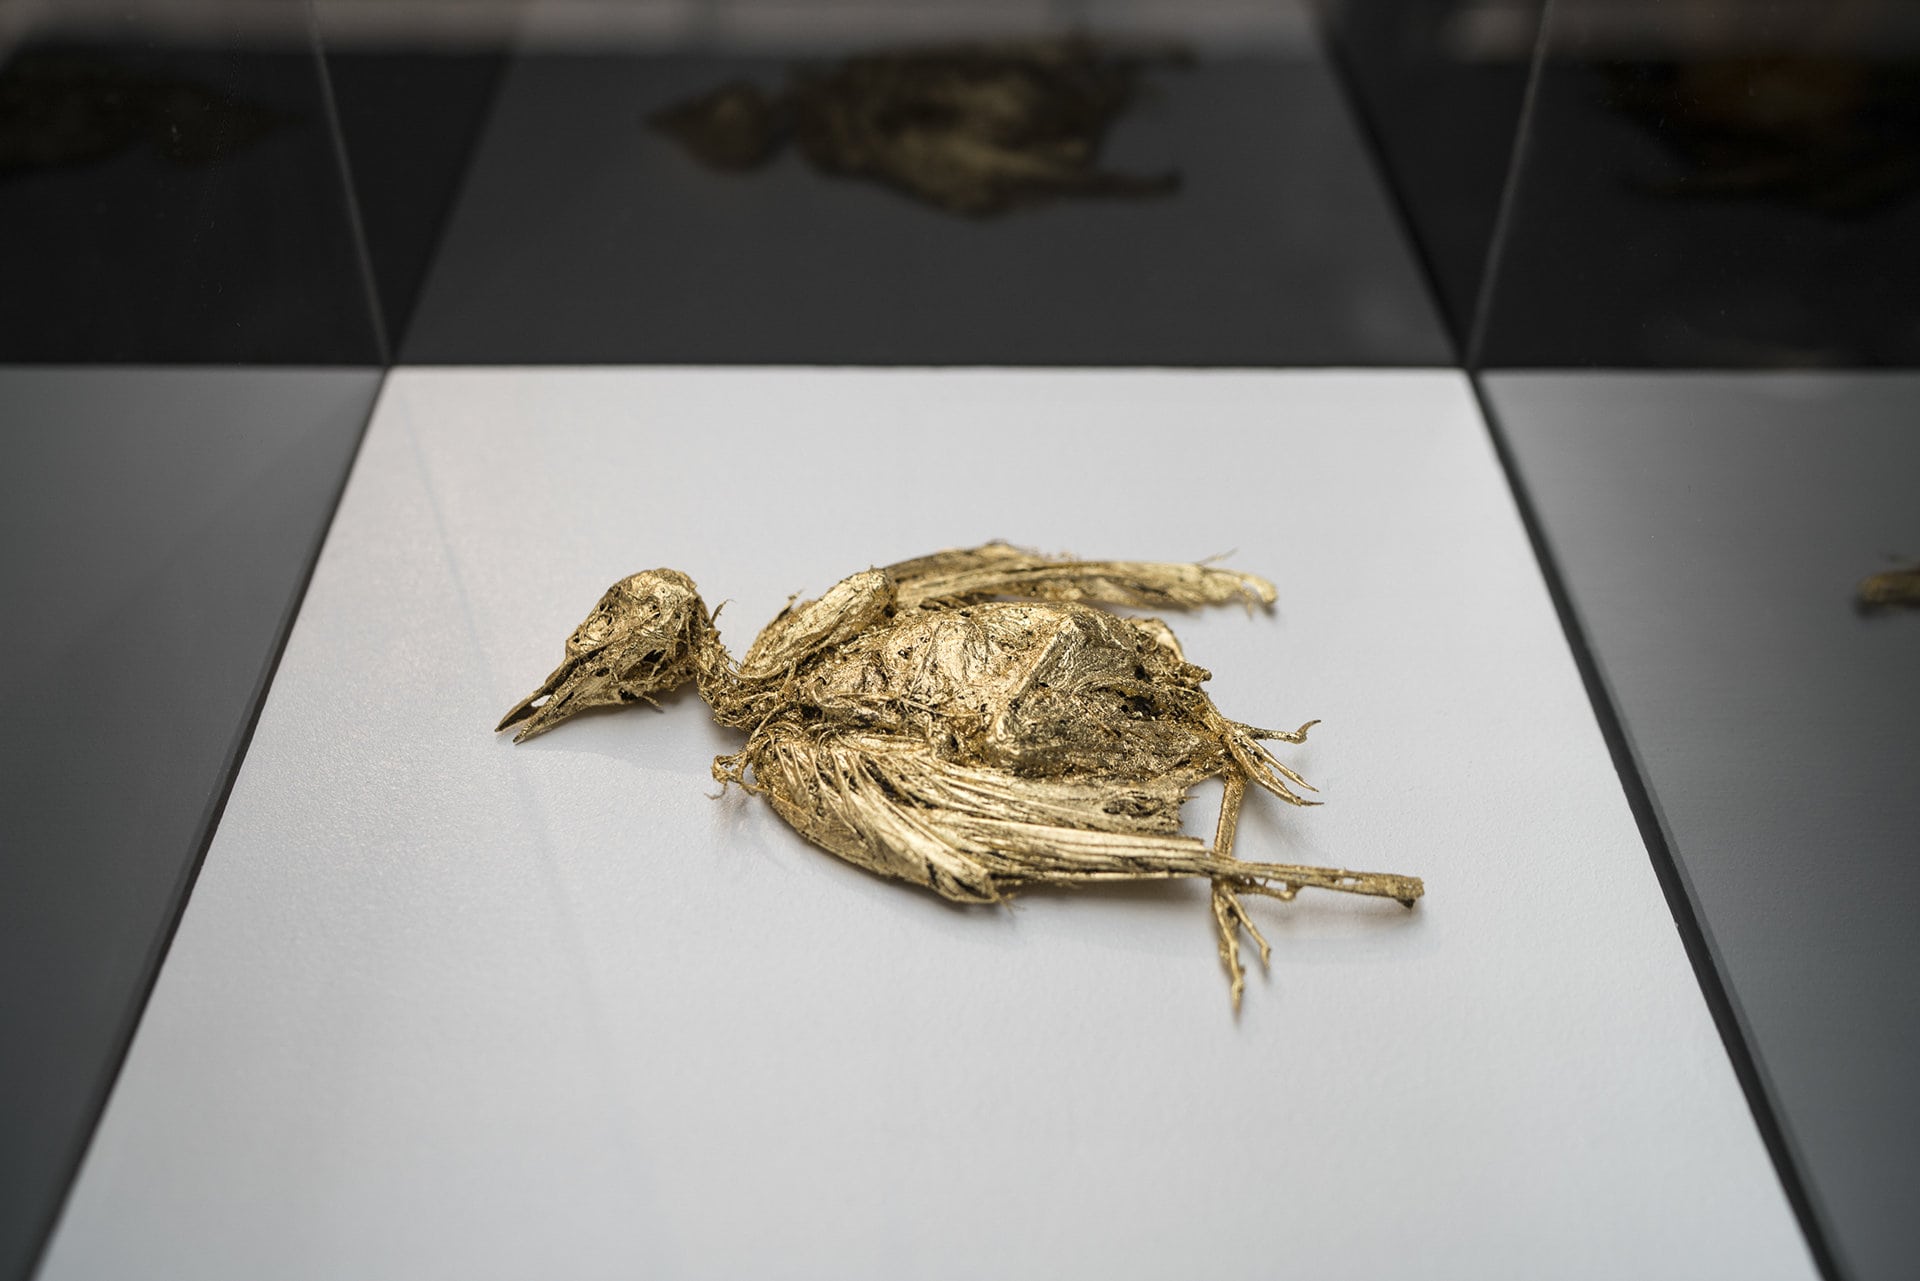 Samuel Yal, Les oiseaux se cachent pour mourir, 48°50’55.6″N 2°13’06.3″E, Matières organique, feuilles d’or 13x15x3 cm, 2017